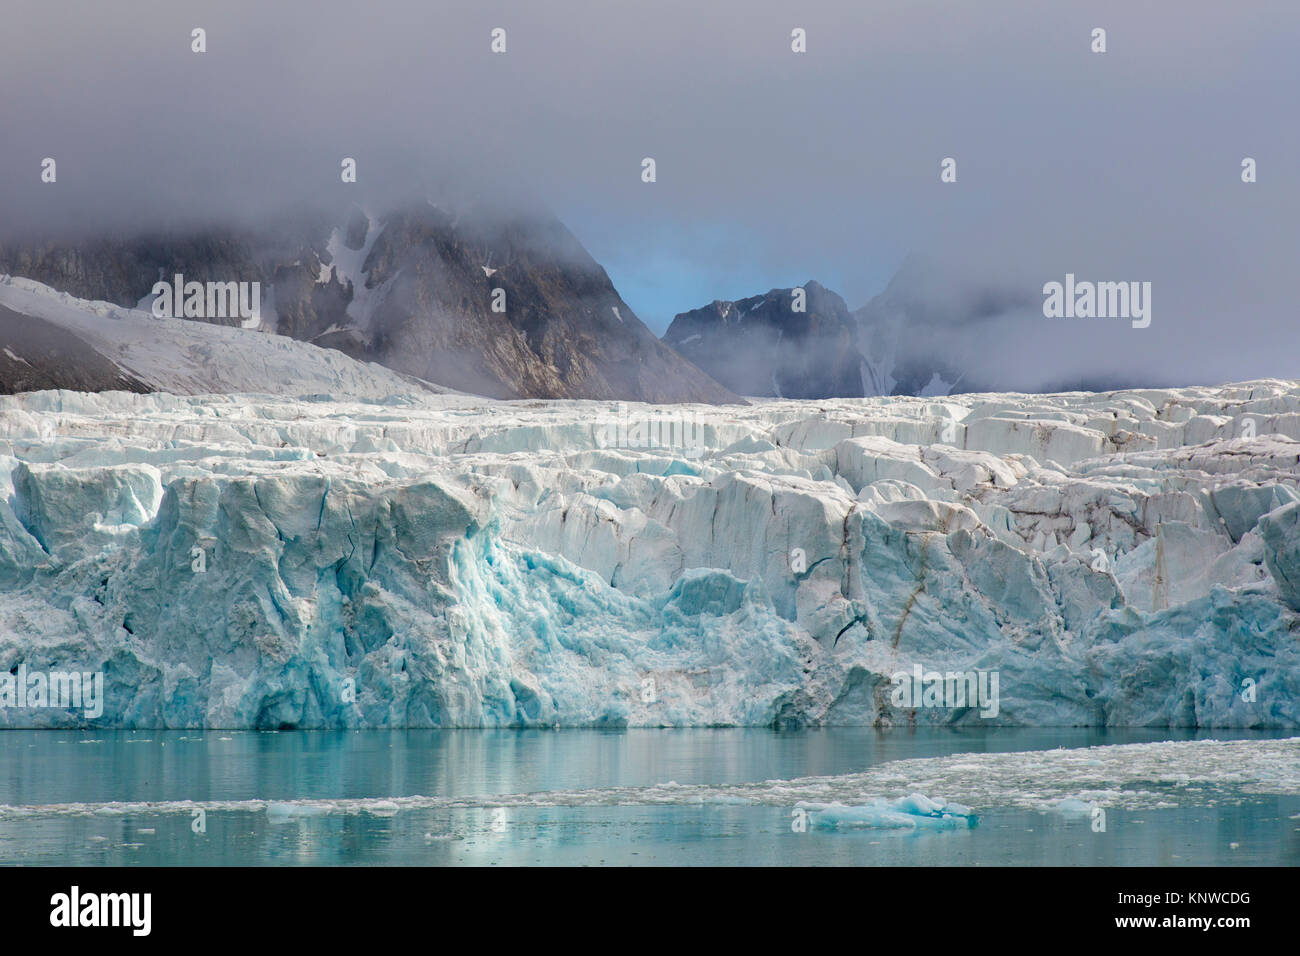 Wagonwaybreen, Gletscher in Albert ich lande auf Spitzbergen/Svalbard in Magdalenefjorden, Norwegen Kalben Stockfoto